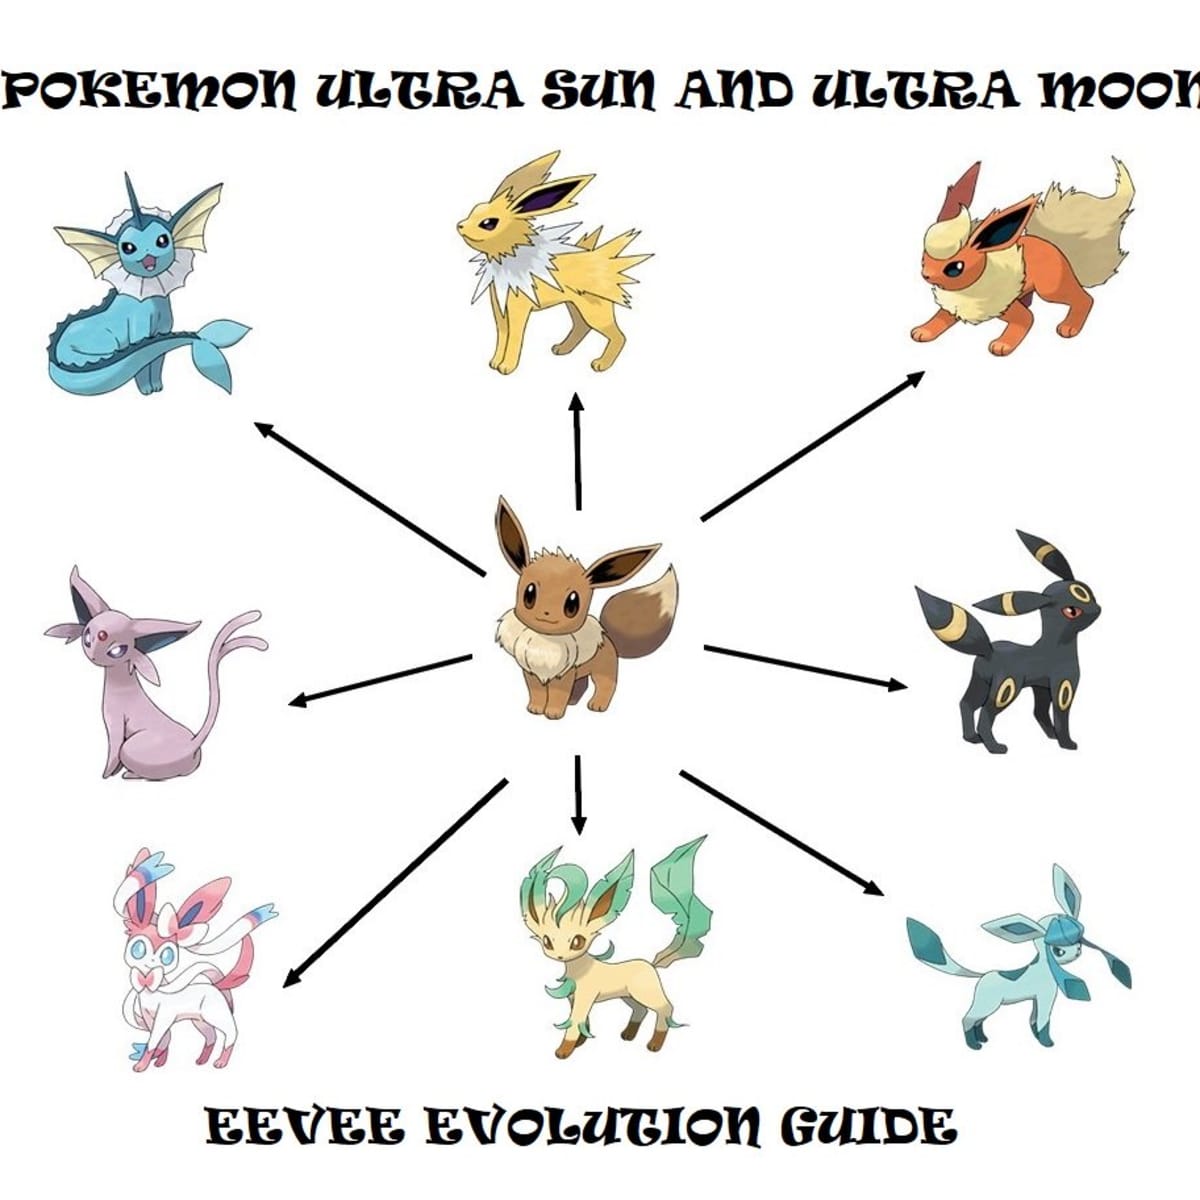 Pokemon Legends Arceus: How to Evolve Eevee Into All Eeveelutions